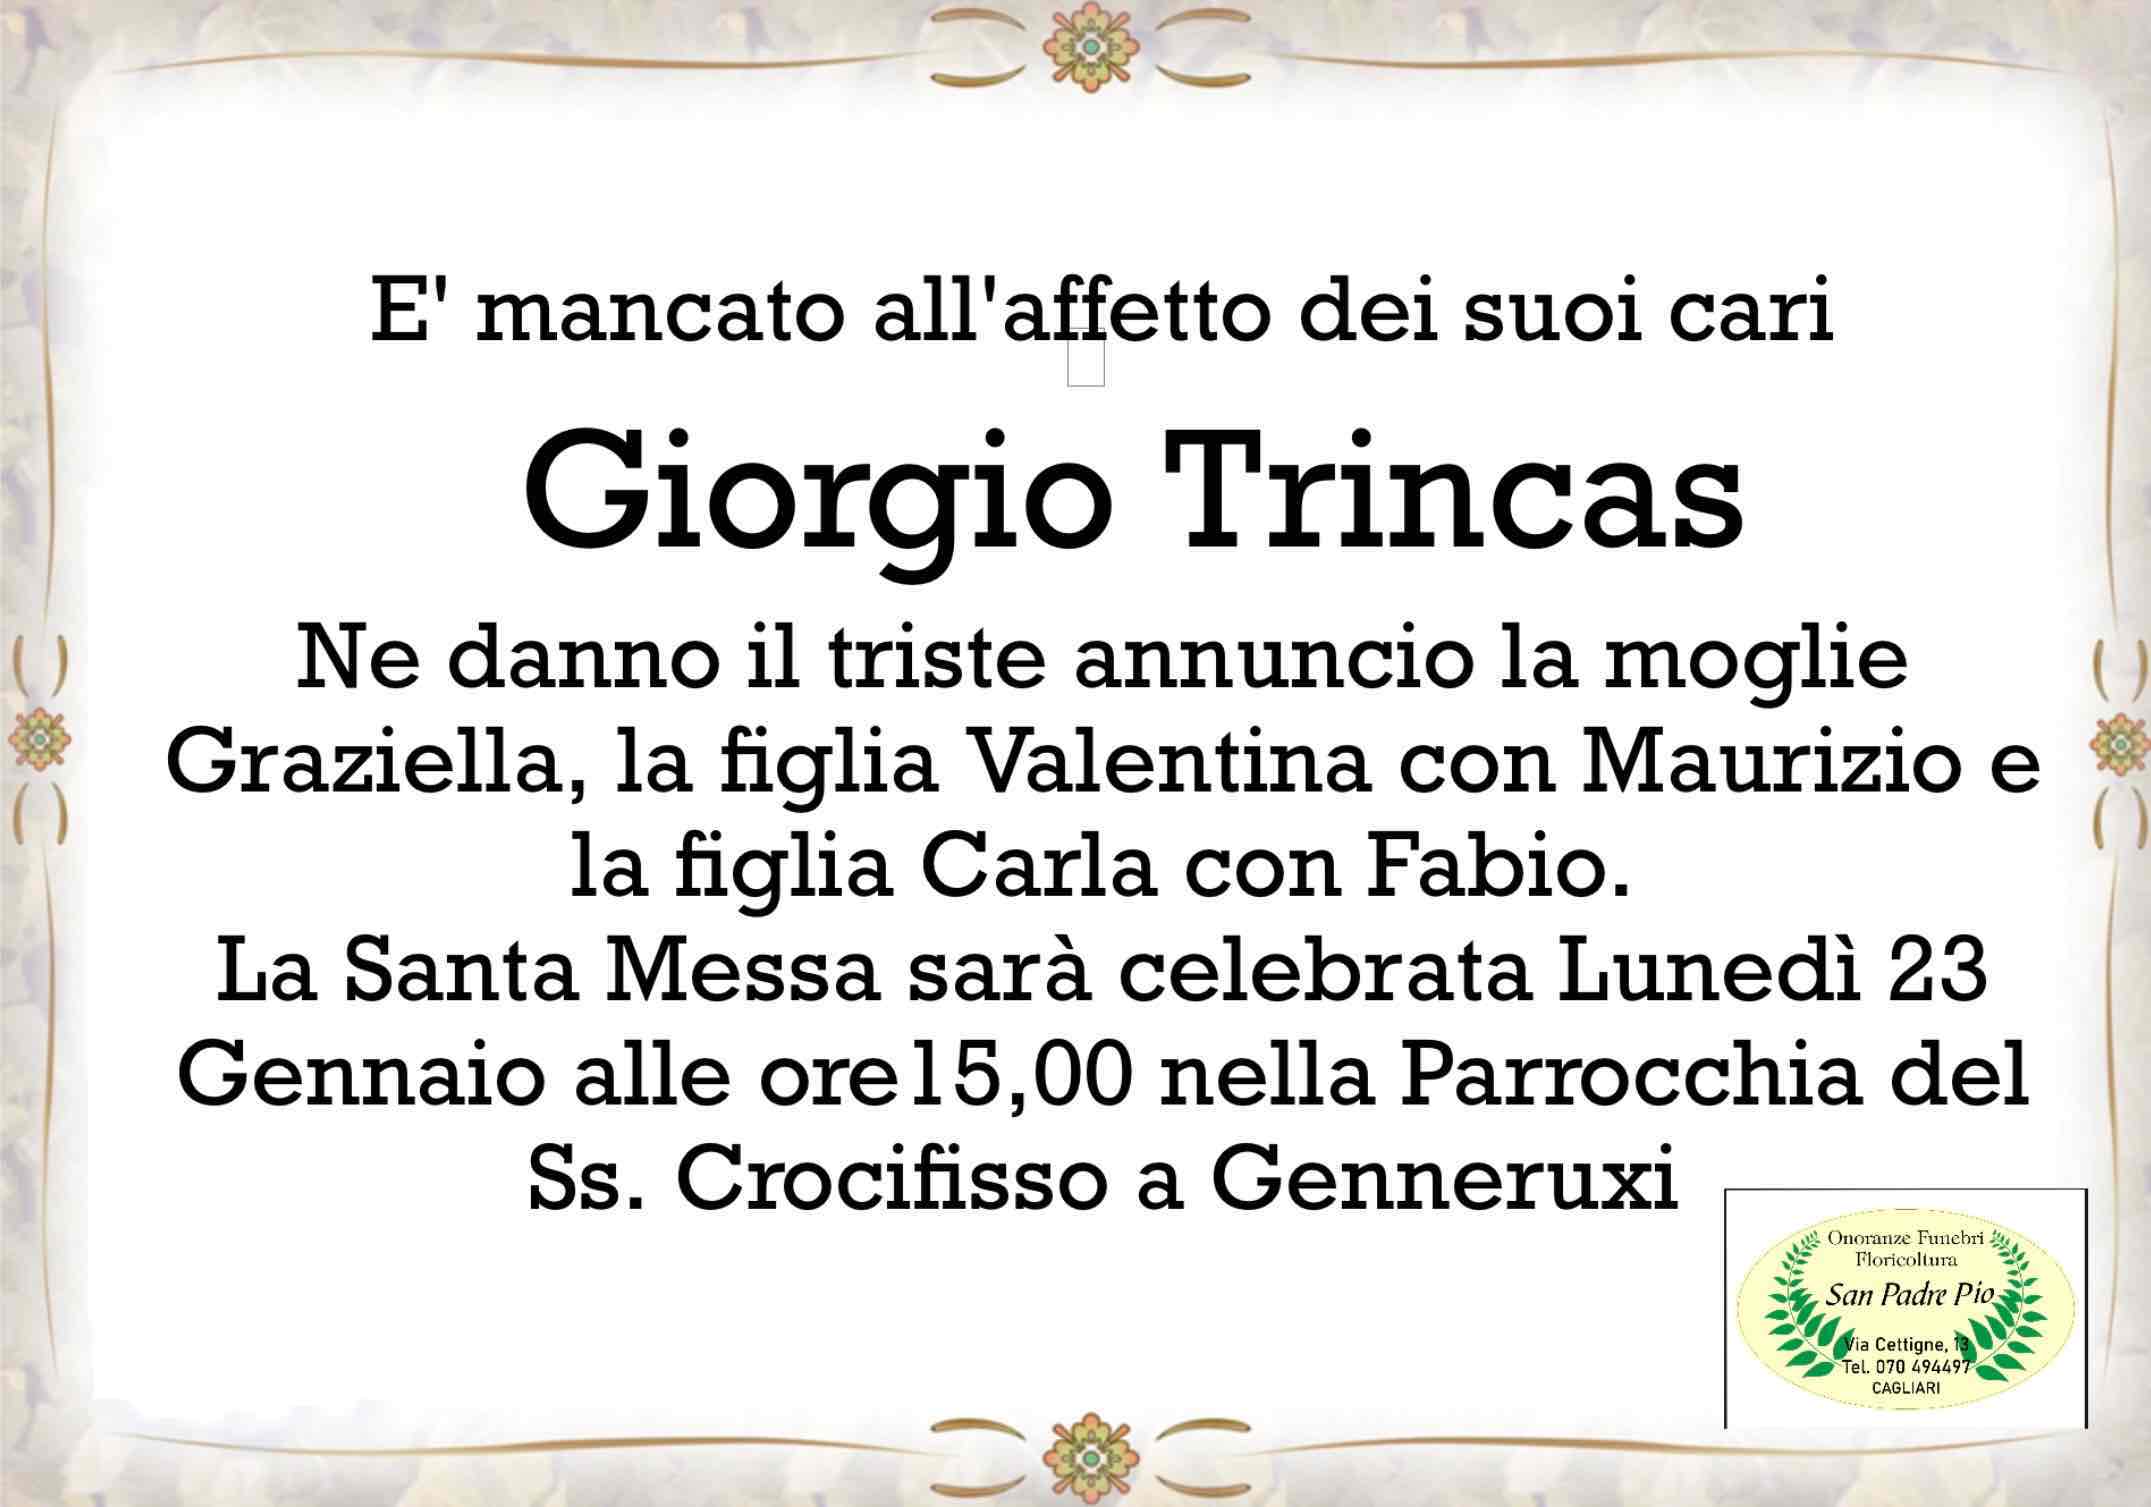 Giorgio Trincas